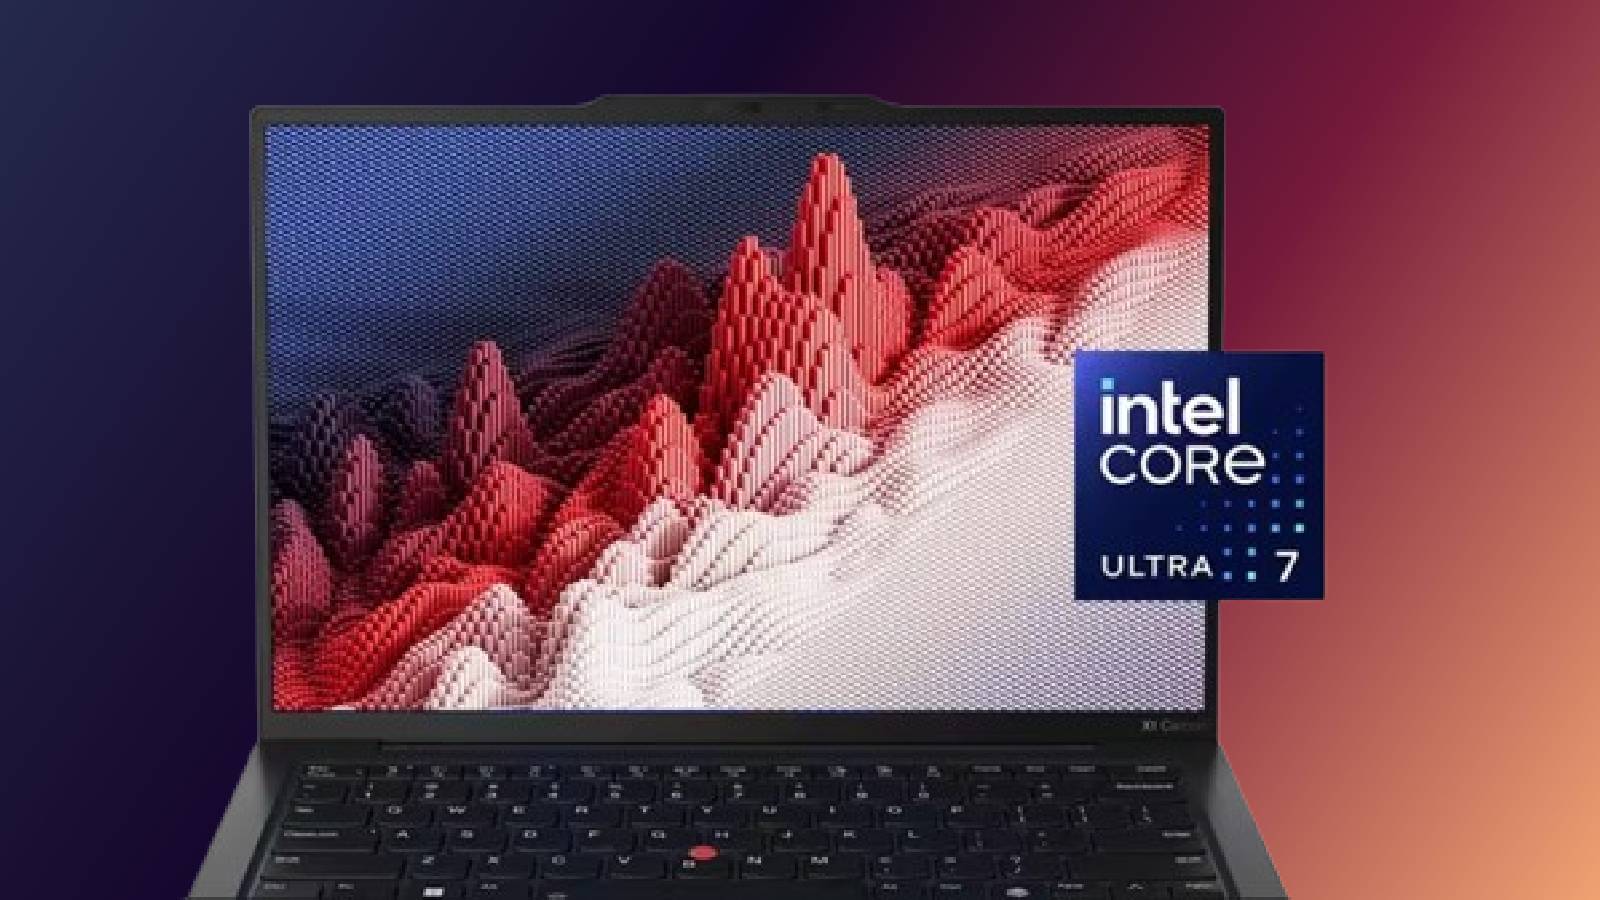 Intel Core ultral laptops